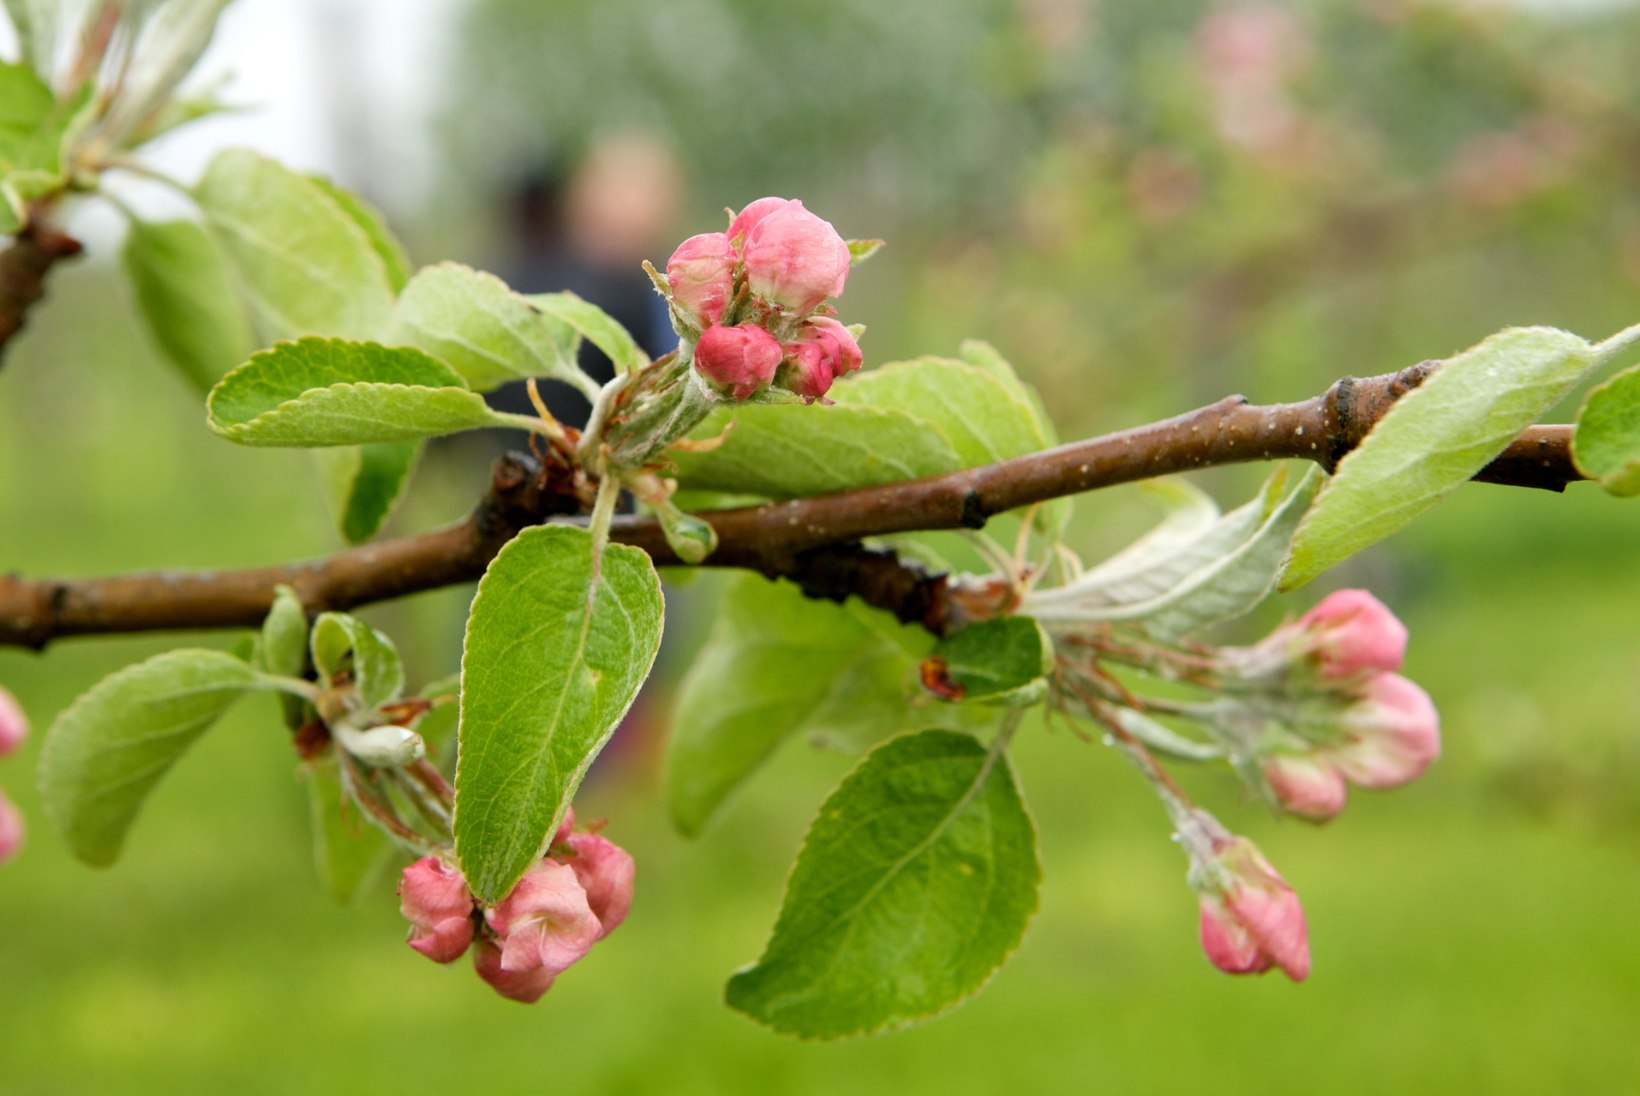 Kevad puuvilja- ja marjaaias: koduaia taimekaitsetööd tehakse enamasti kahes järgus. Vaata parimaid nippe!